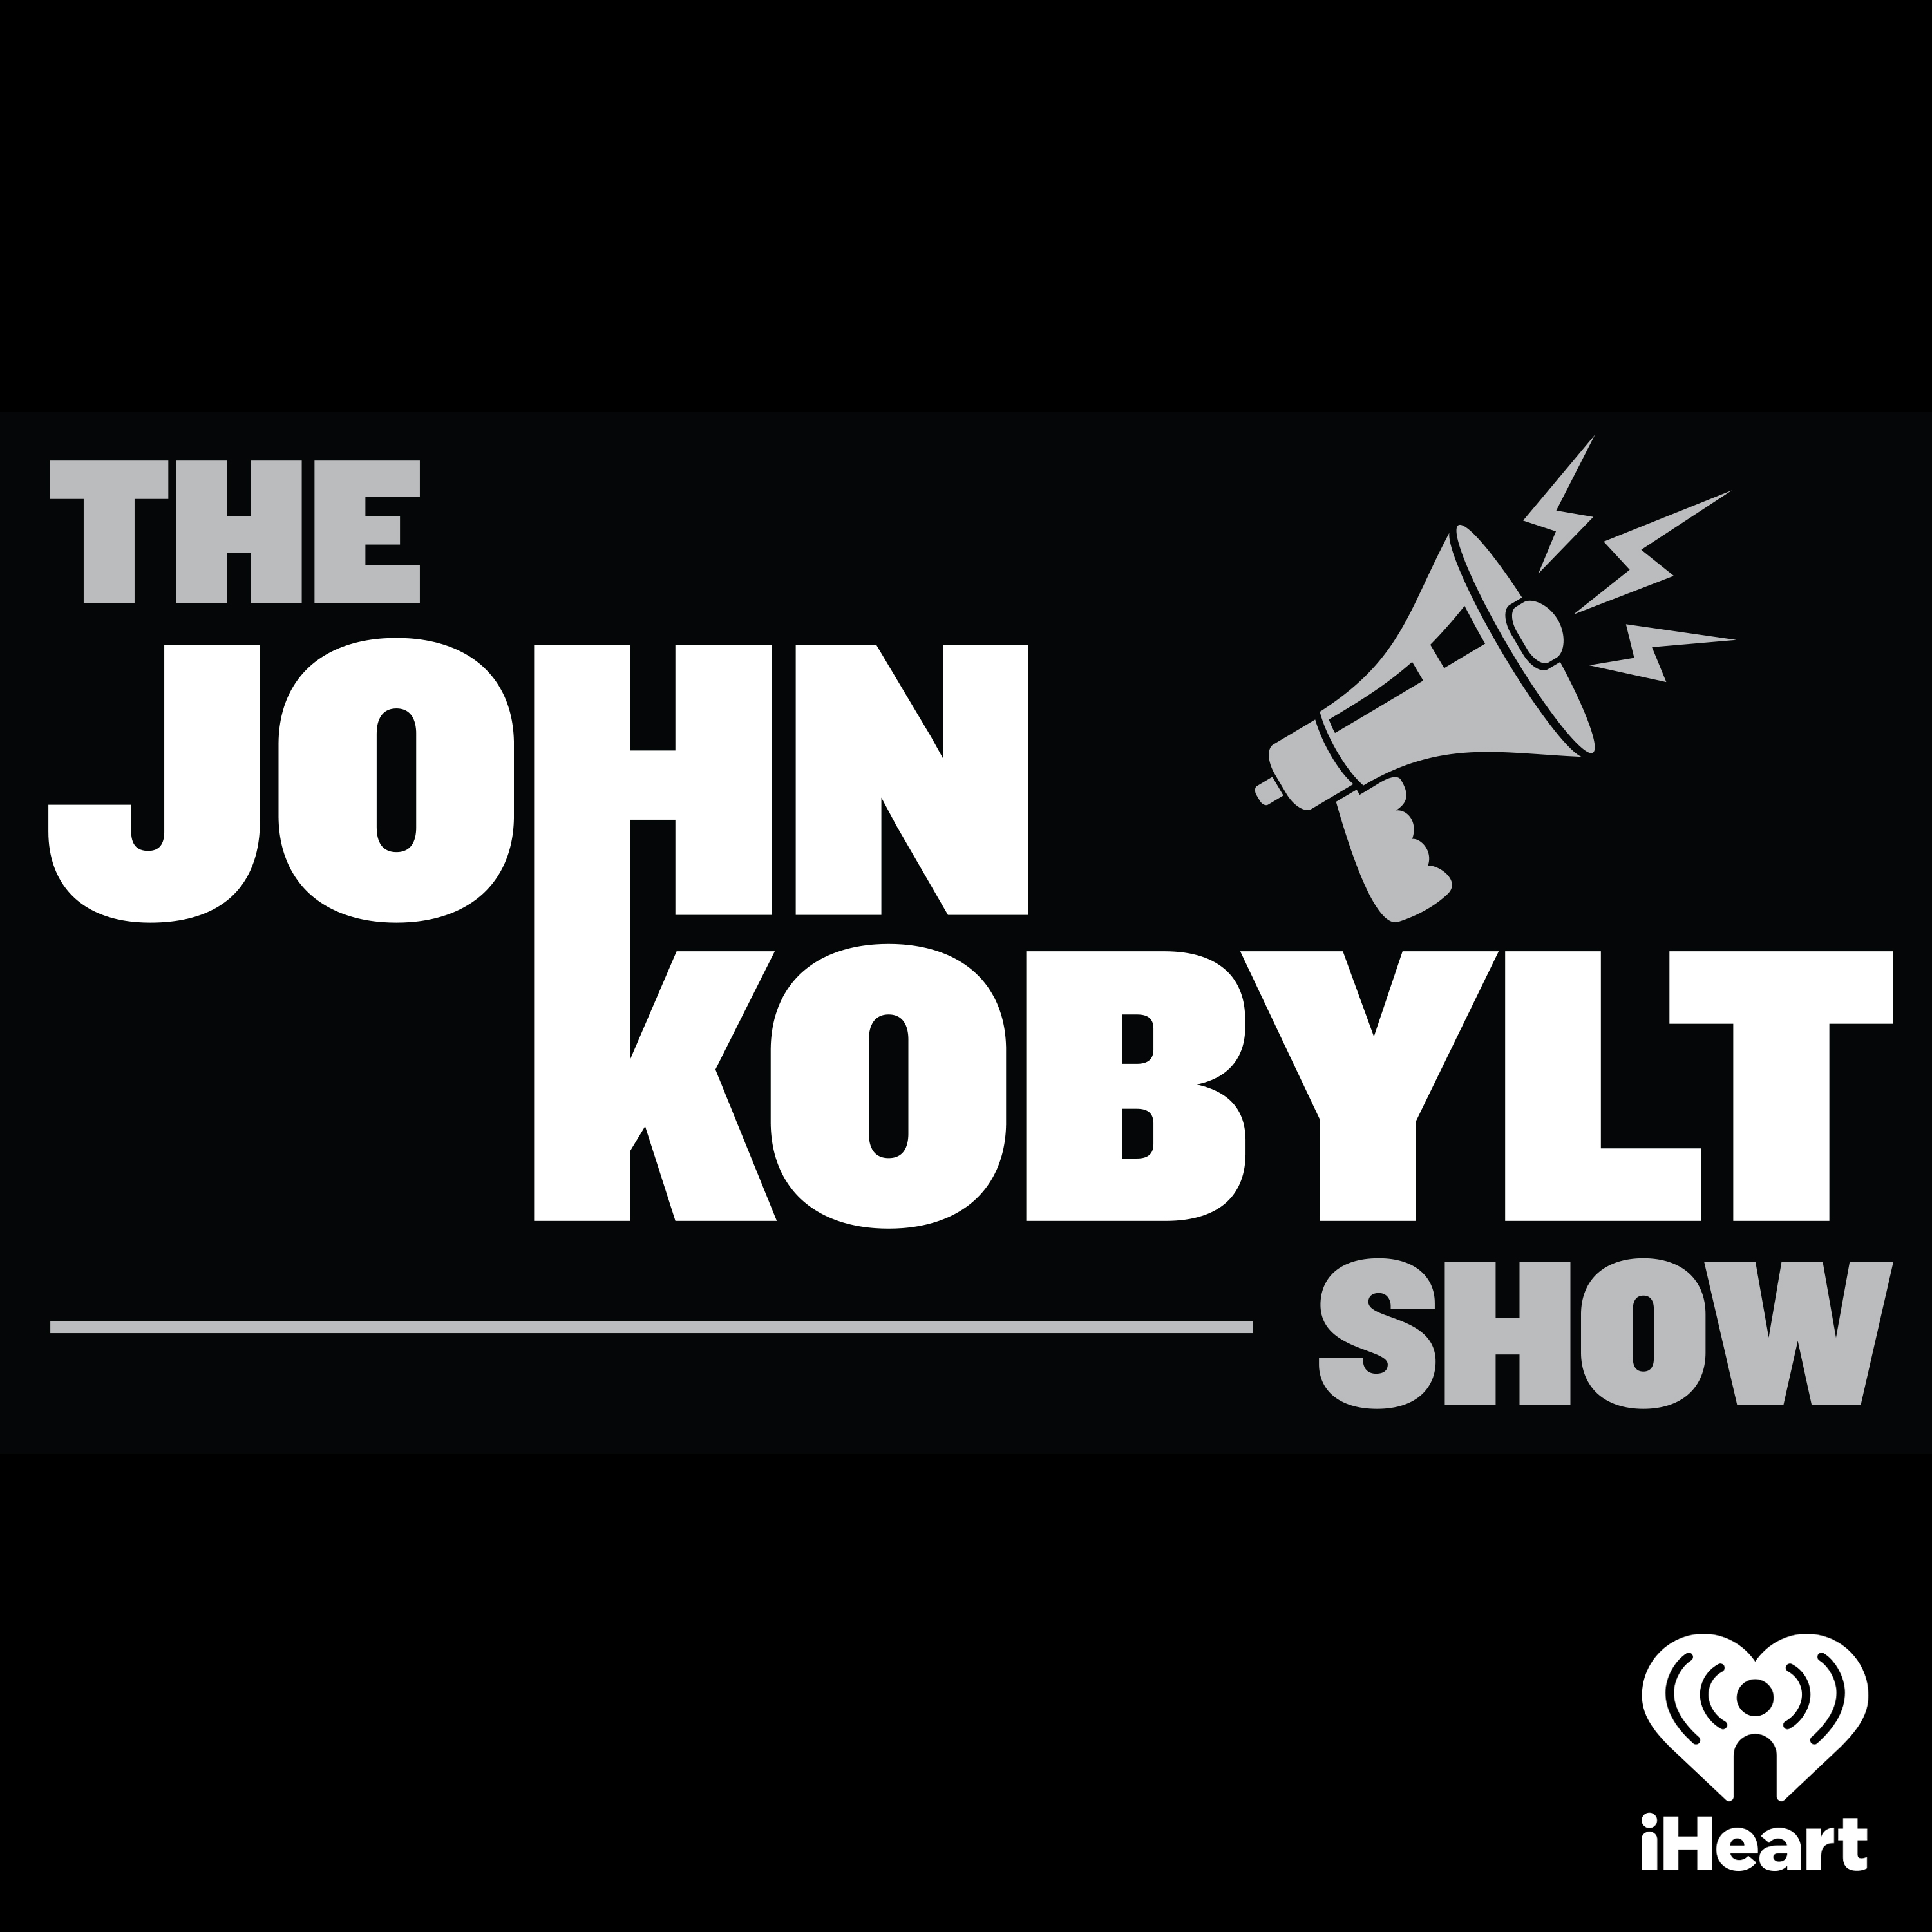 The John Kobylt Show Hour 3 (07/08) - NEA President's Unhinged Speech